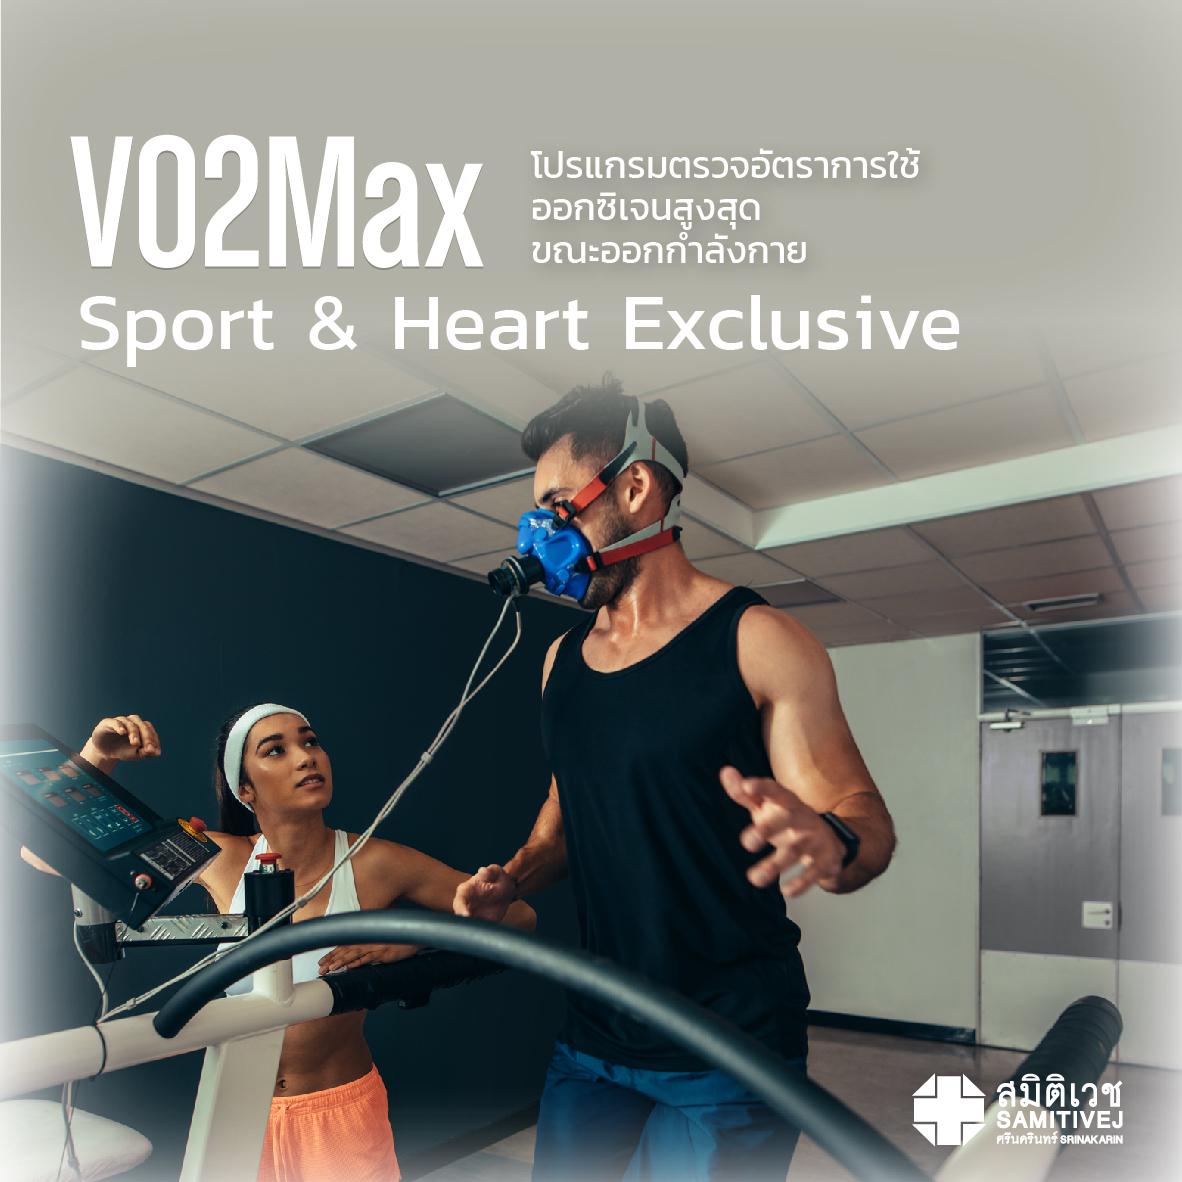 โปรแกรมตรวจอัตราการใช้ออกซิเจนสูงสุดขณะออกกำลังกาย (VO2max Test Sport & Heart Exclusive) - สมิติเวช ศรีนครินทร์